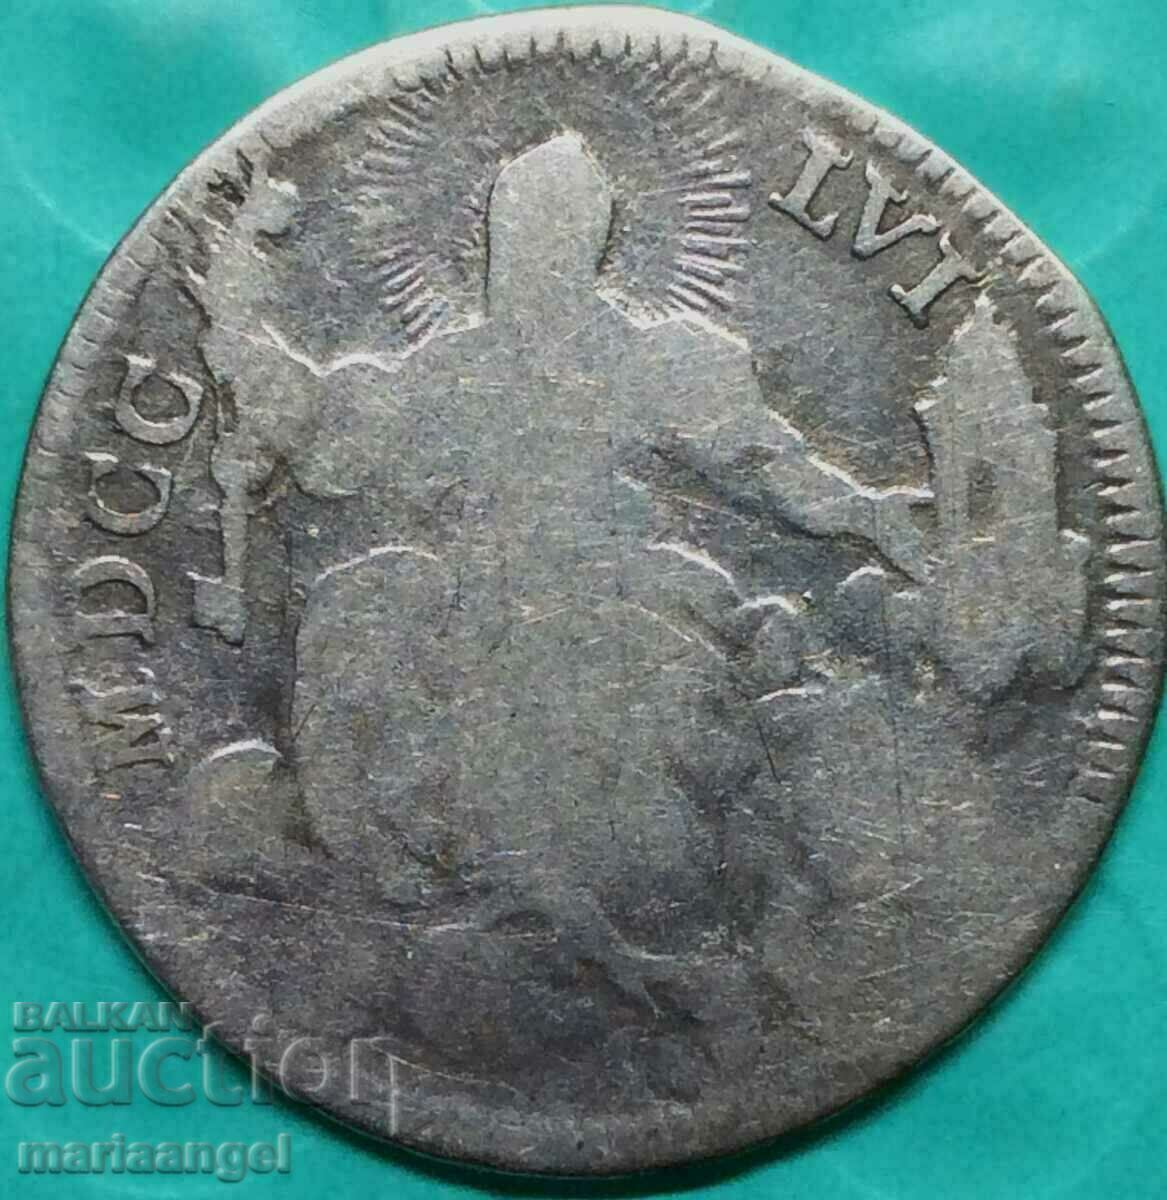 Giulio 1756 Vatican Benedict XIV silver